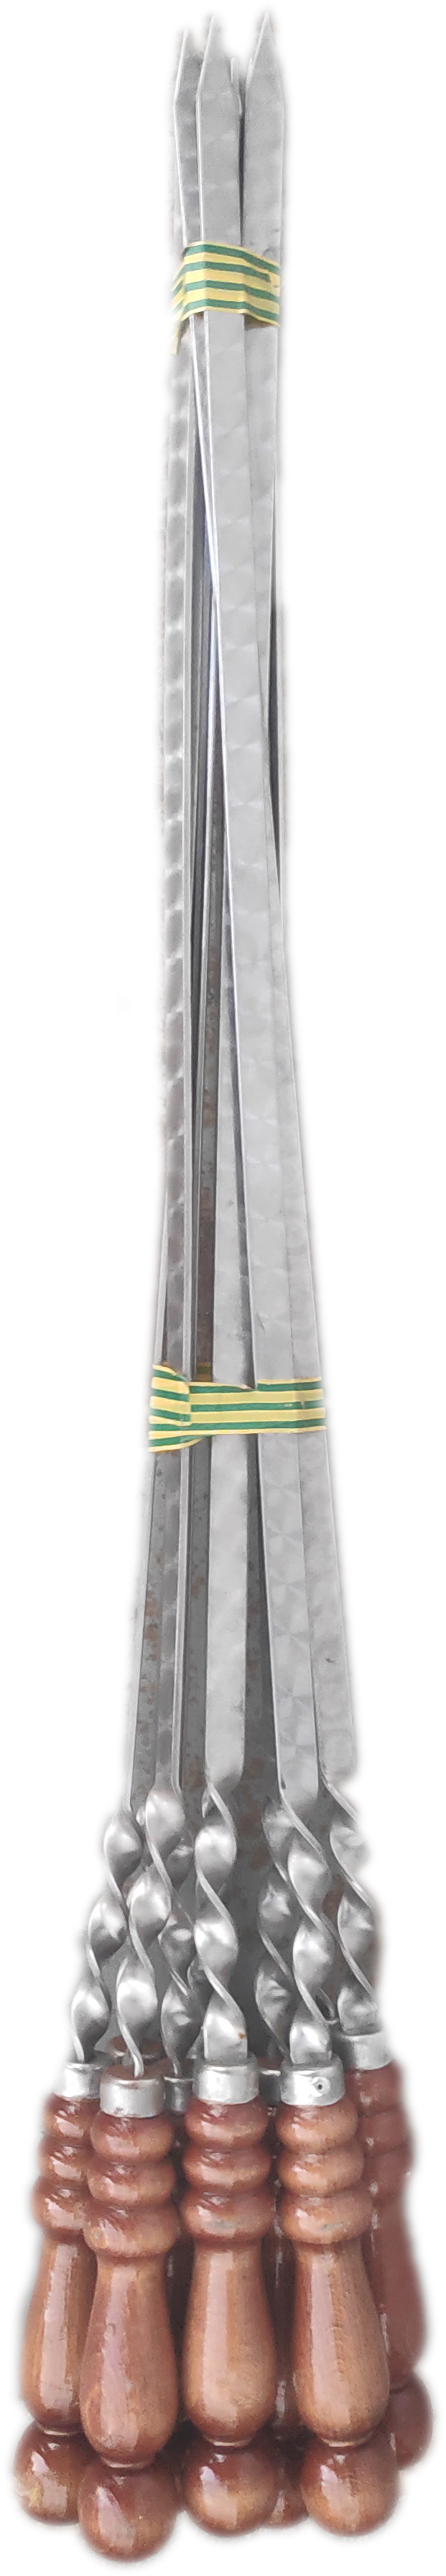 Шампур нержавейка с деревянной ручкой 55 см. (10)